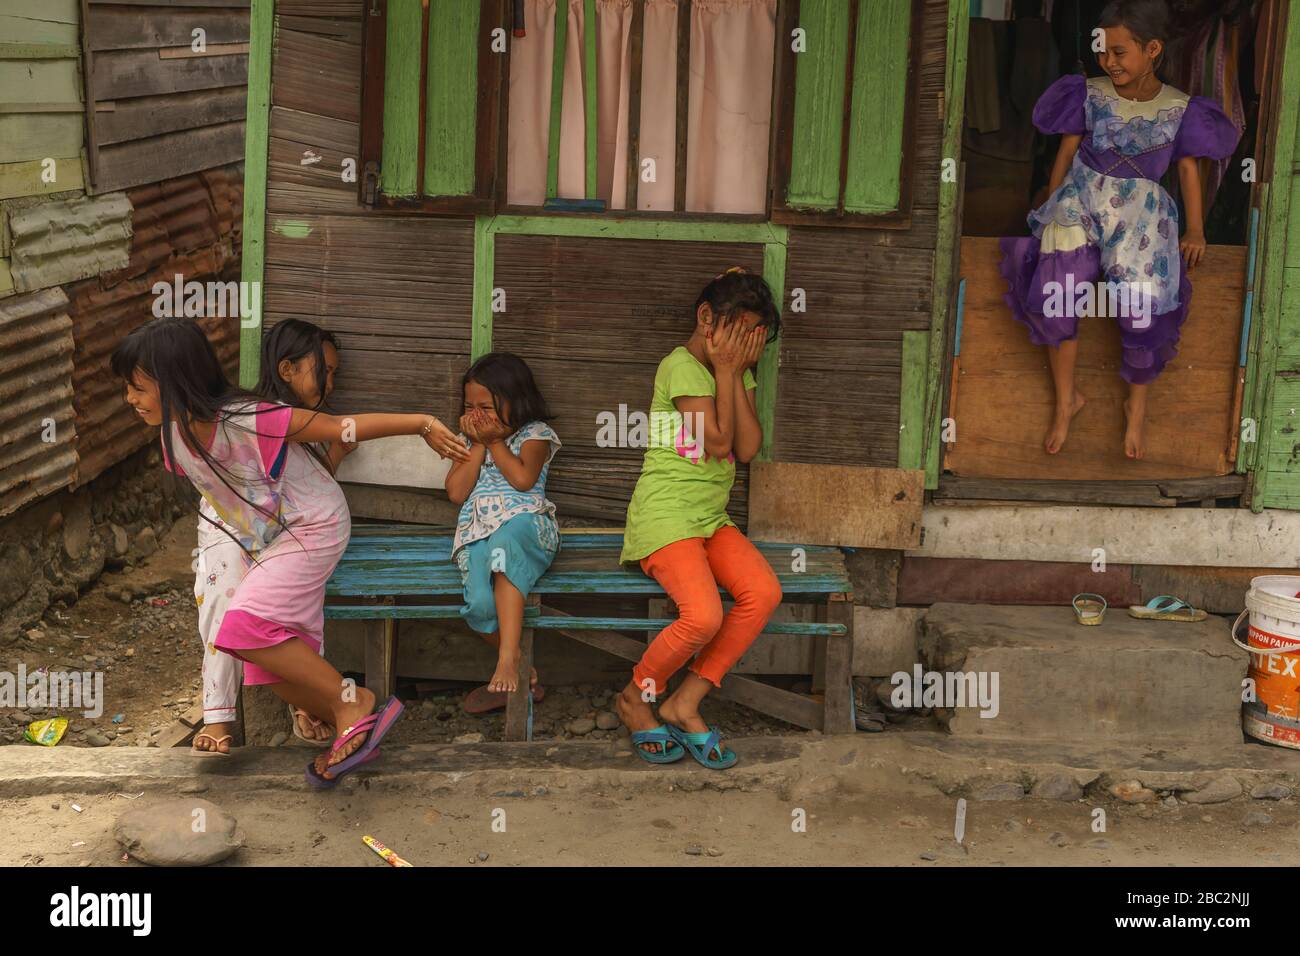 21 juin 2018 Panyambungan, Sumatra, Indonésie: Les petites filles locales tiraient et excitaient la caméra qui courait les visages et riant Banque D'Images